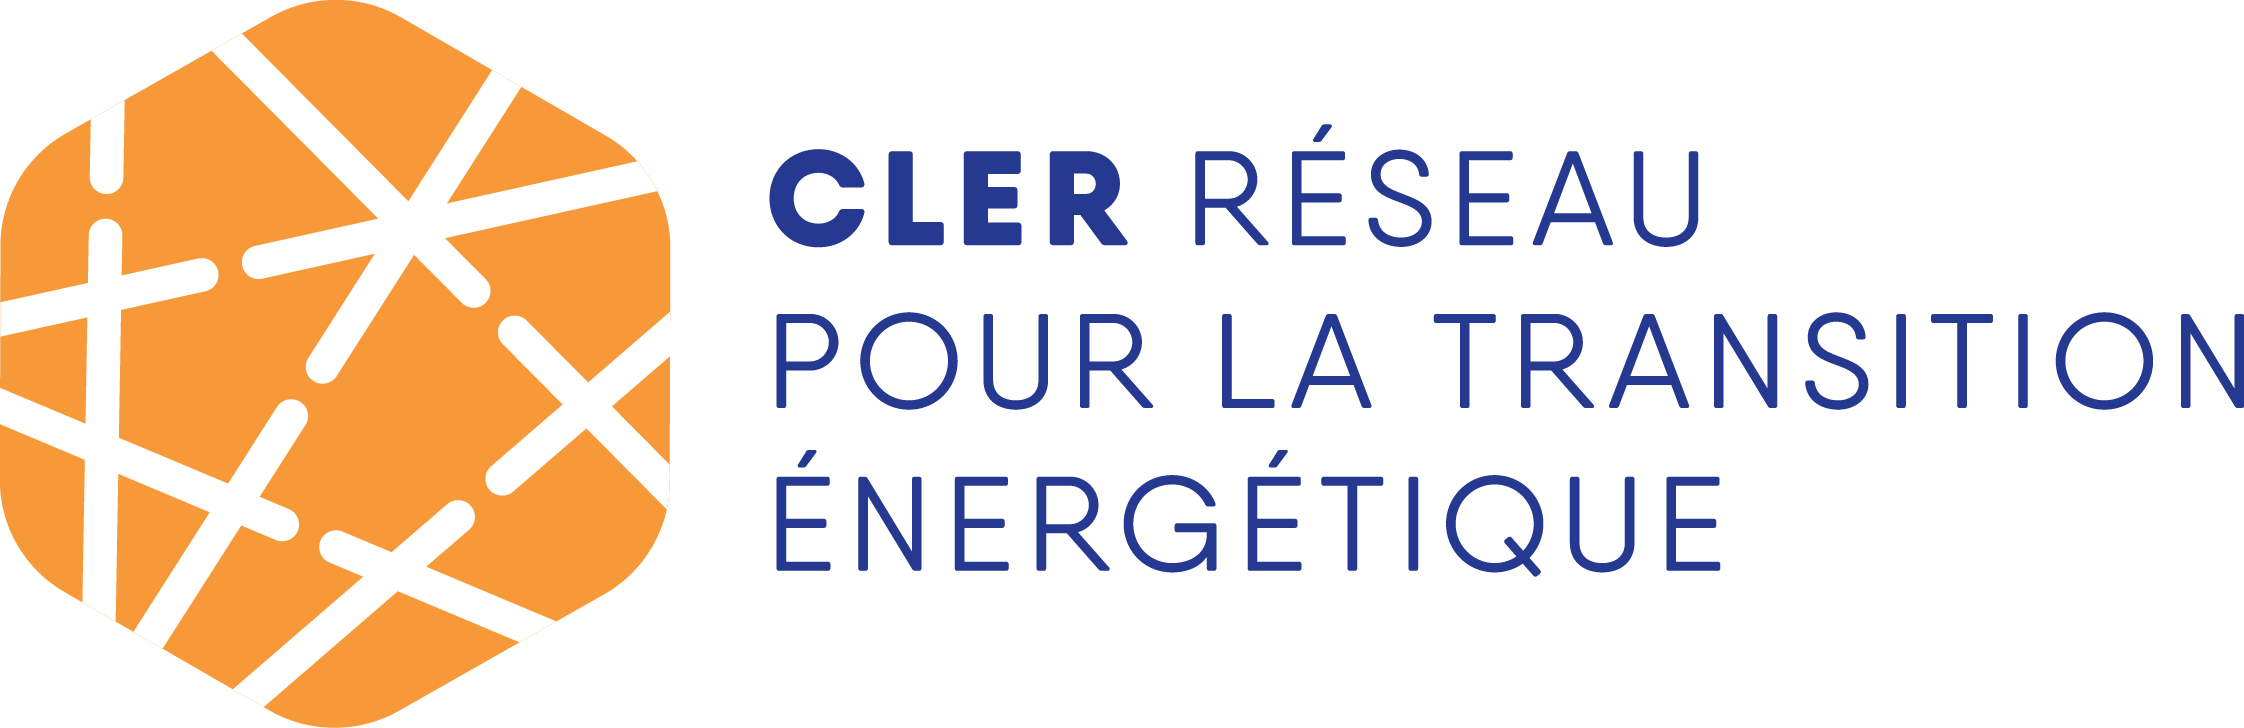 CLER – Réseau pour la transition énergétique